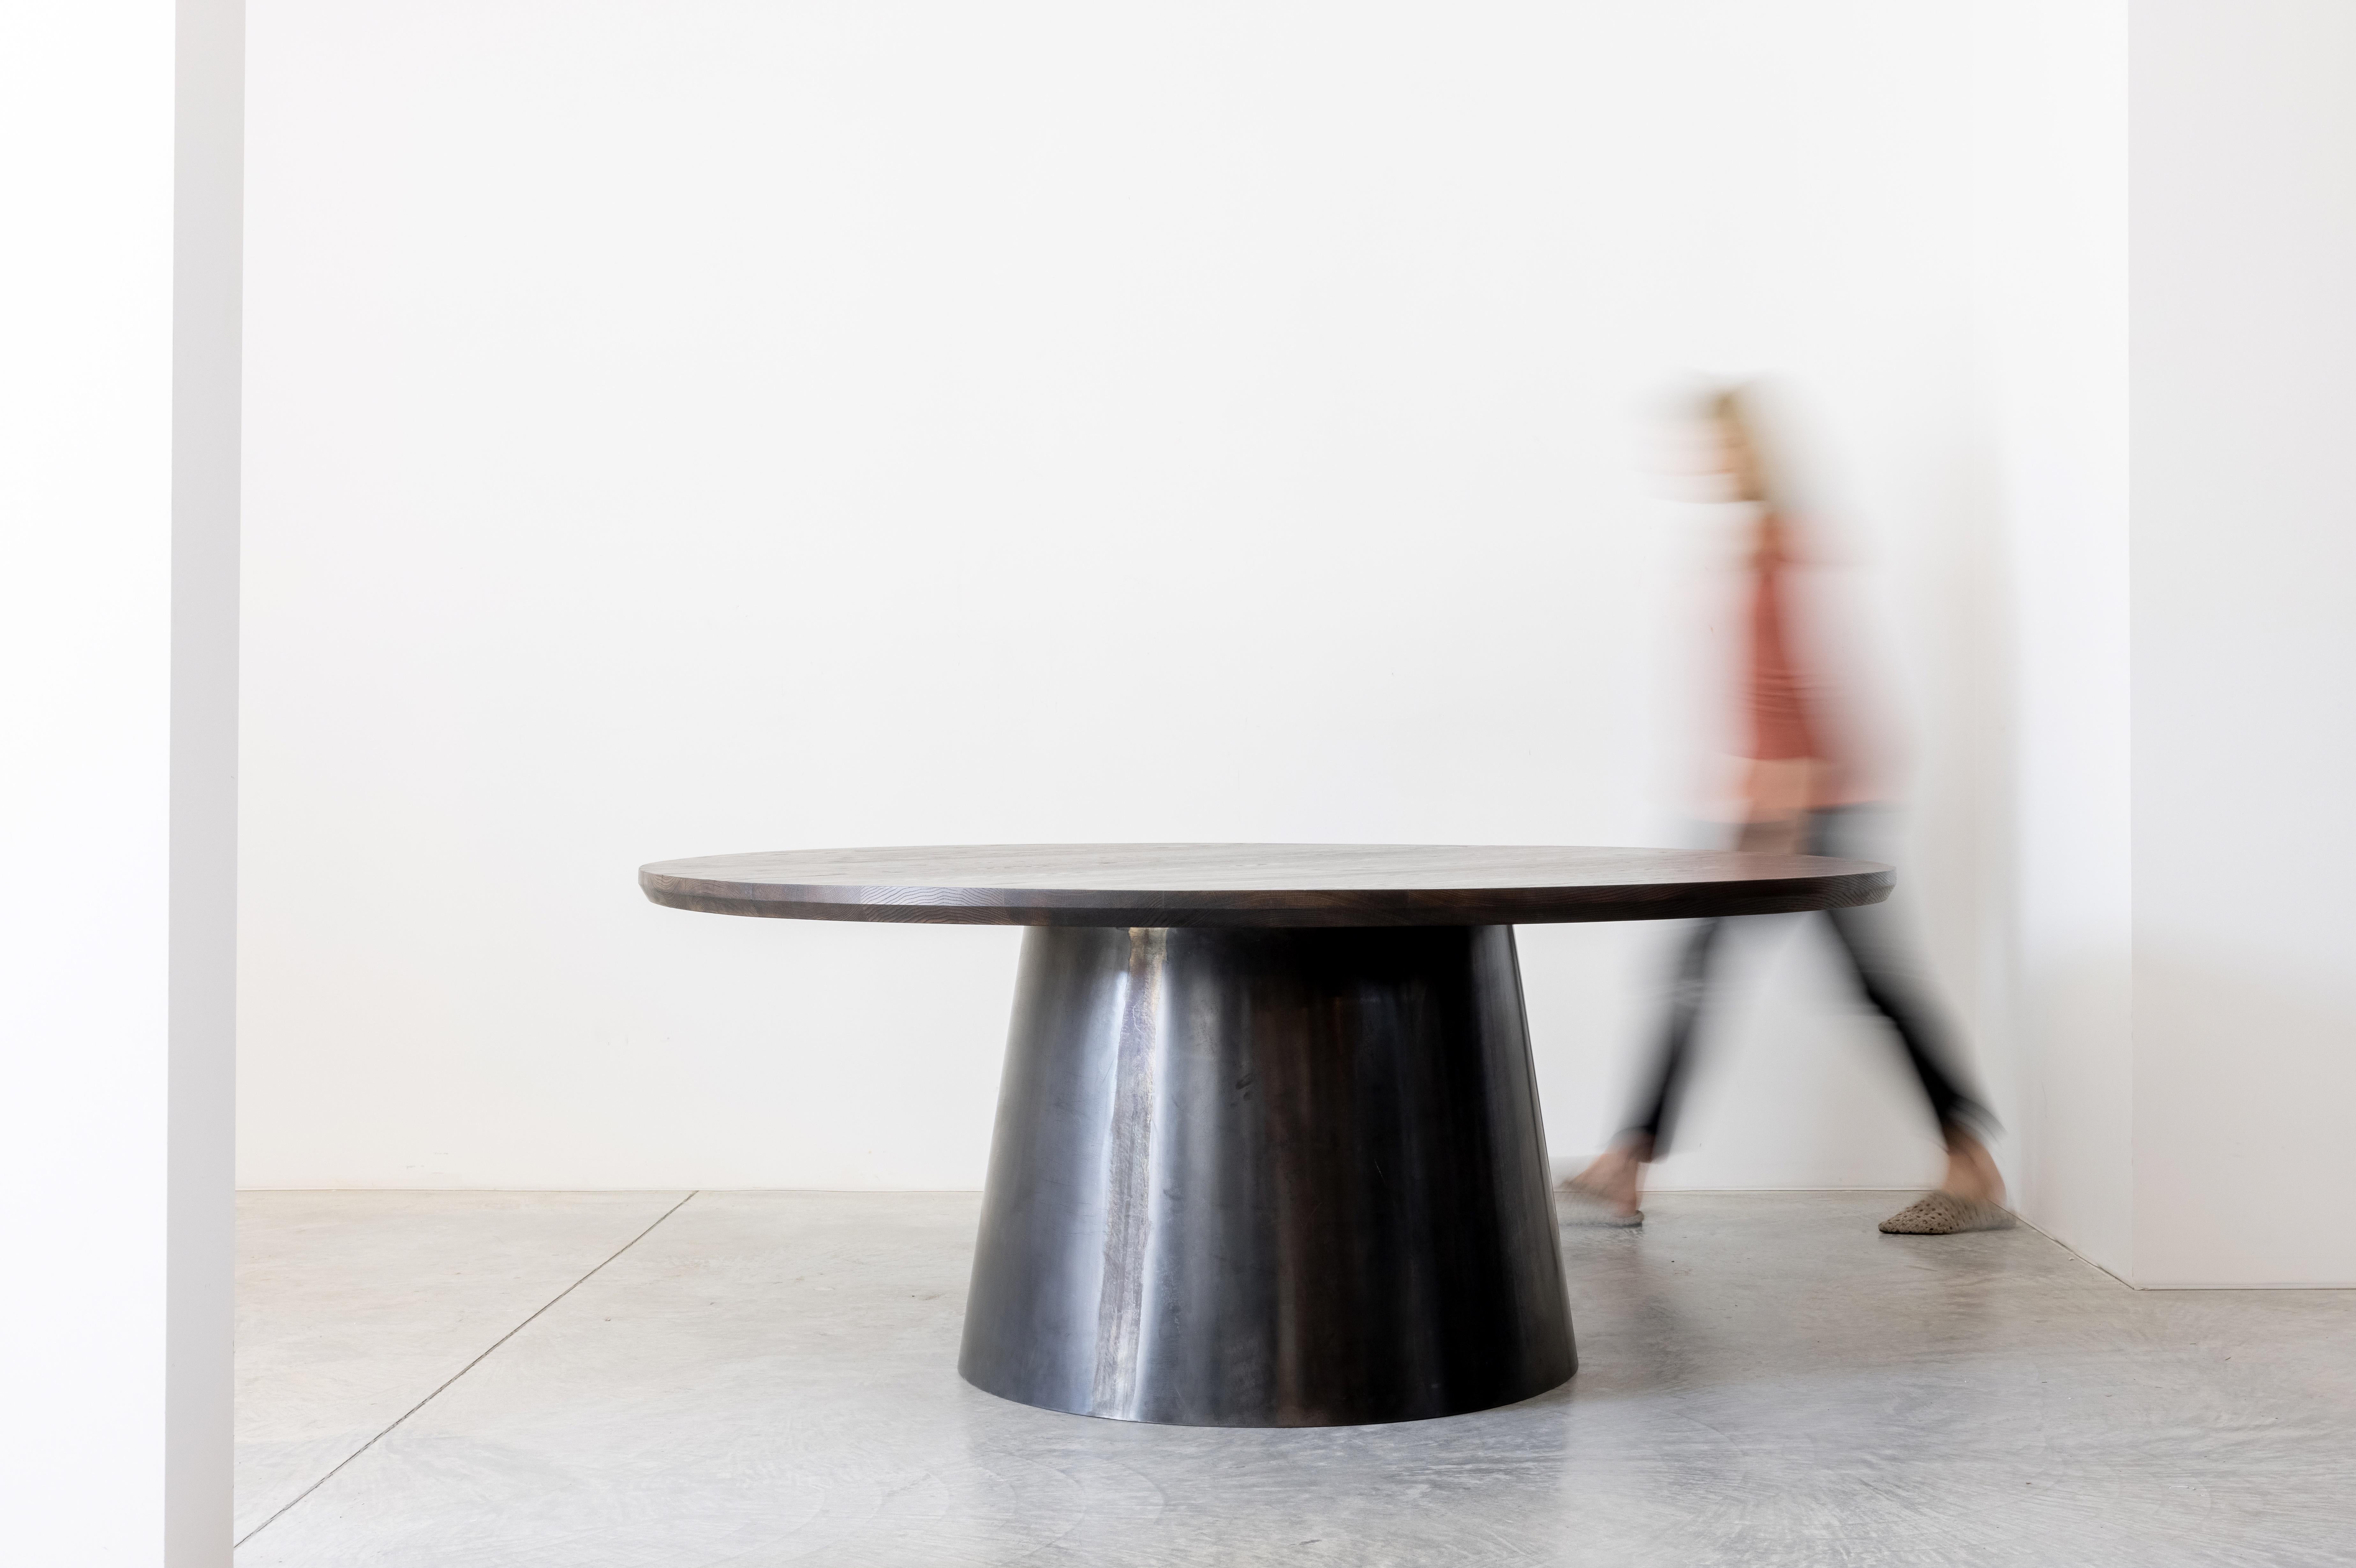 Ein dramatischer runder Tisch mit einem dicken Fuß aus geschwärztem Stahl. Der gebogene, konische Sockel ist sorgfältig gekrümmt und so zusammengefügt, dass eine fast nahtlose Verbindung entsteht, die als skulpturale Form wirkt. Die Verjüngung um 8